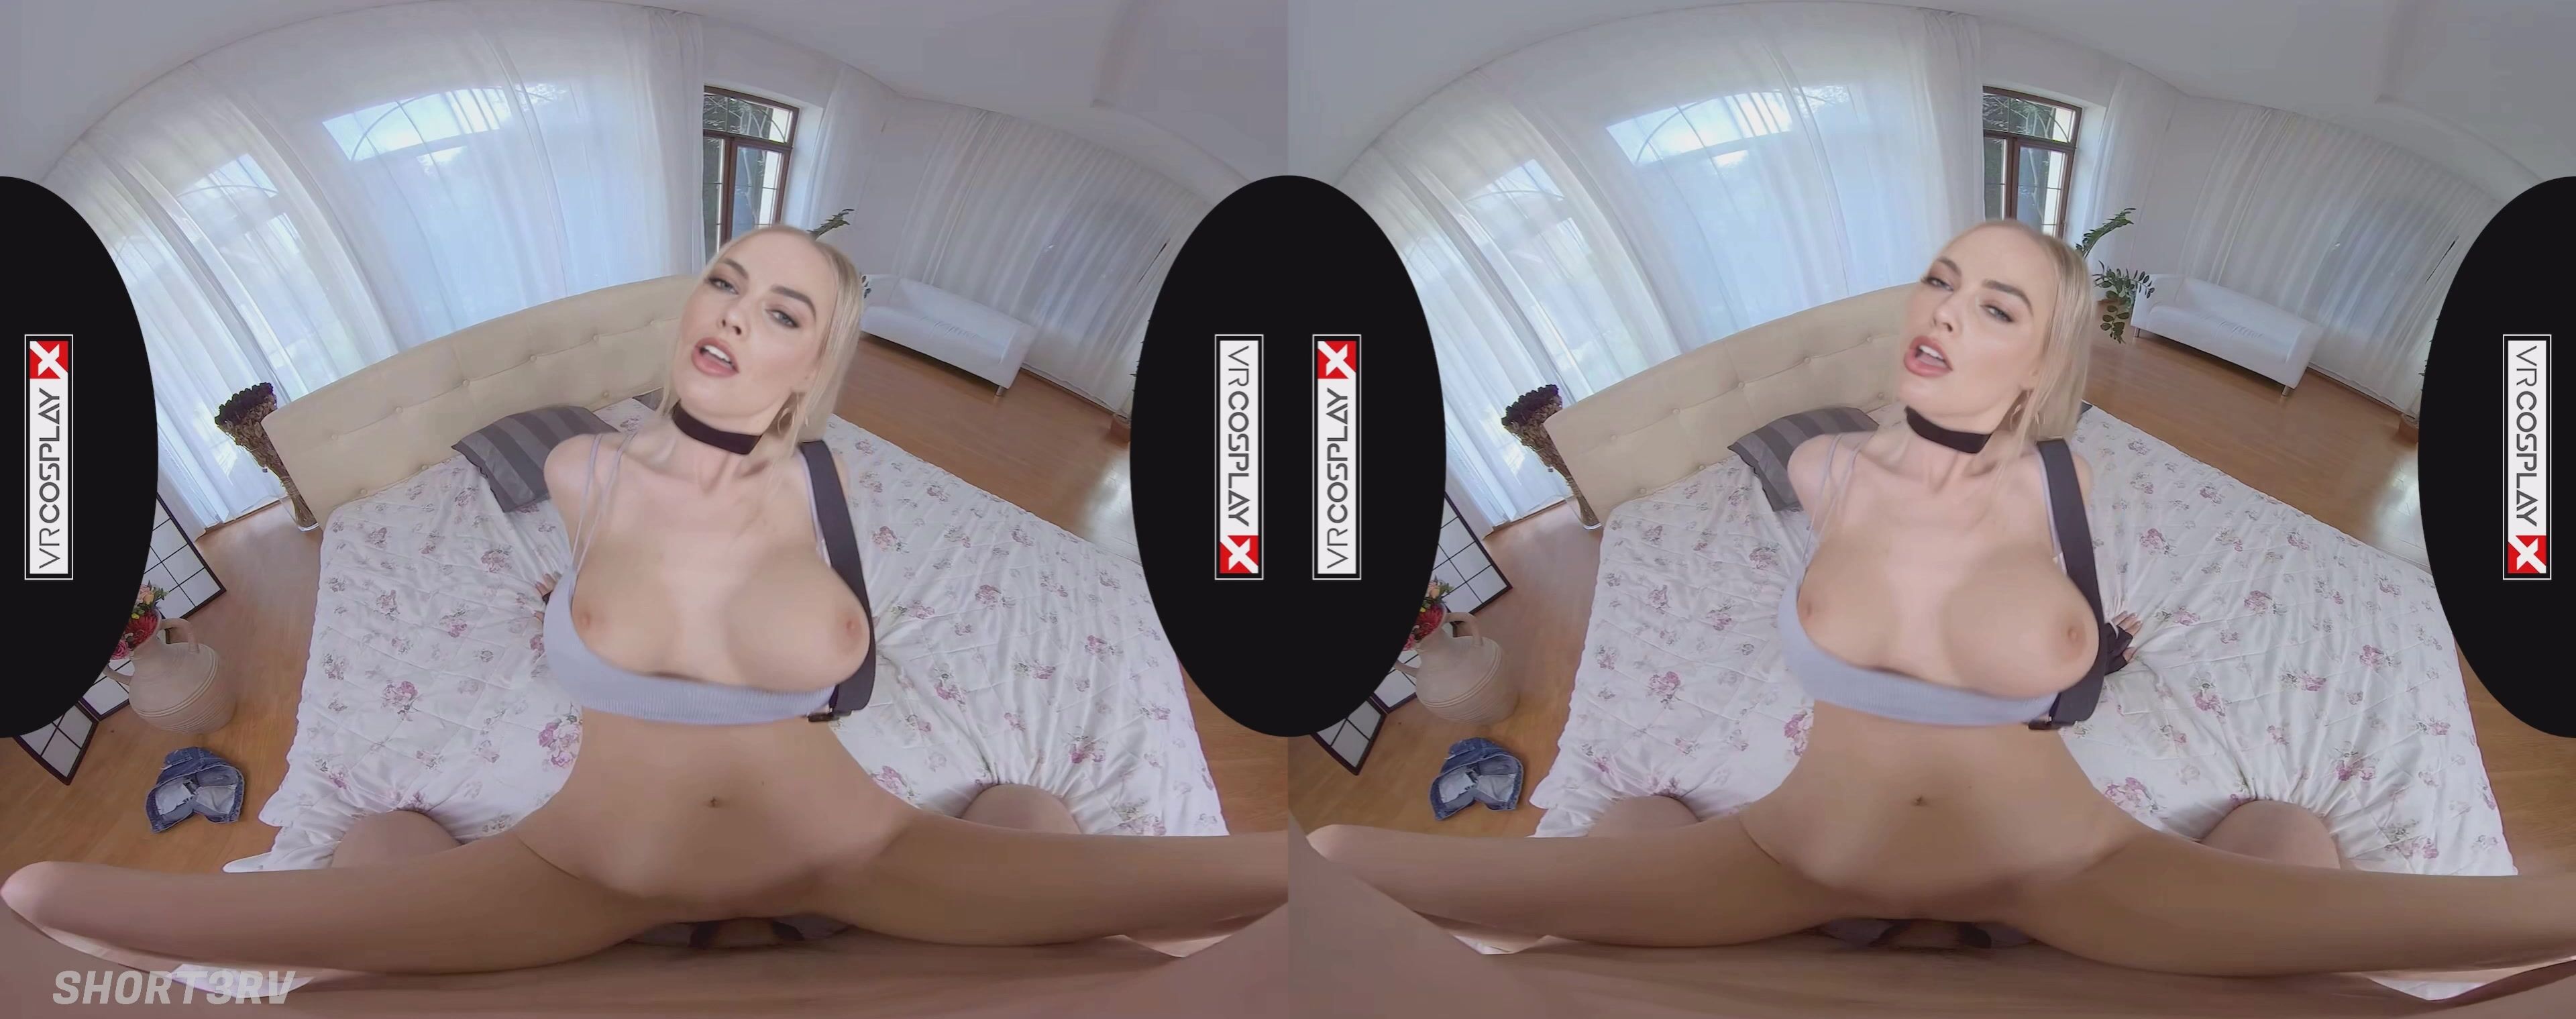 Not Margot Robbie in VR (Deepfake)